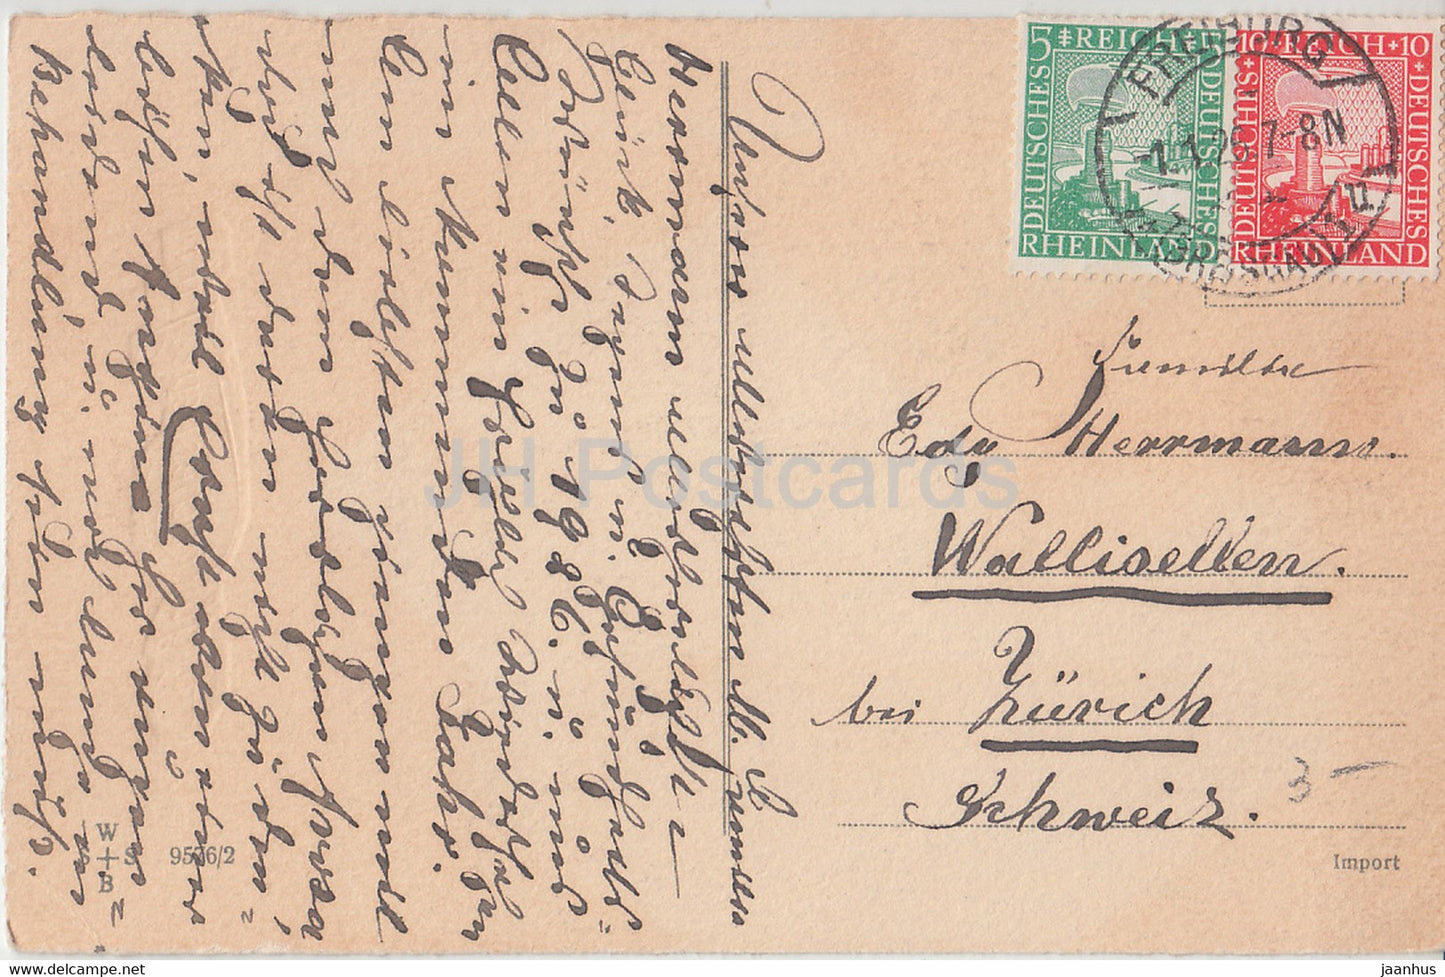 New Year Greeting Card - Ein Gluckliches Neues Jahr - children - WSSB 9576/2 - old postcard - 1926 - Germany - used